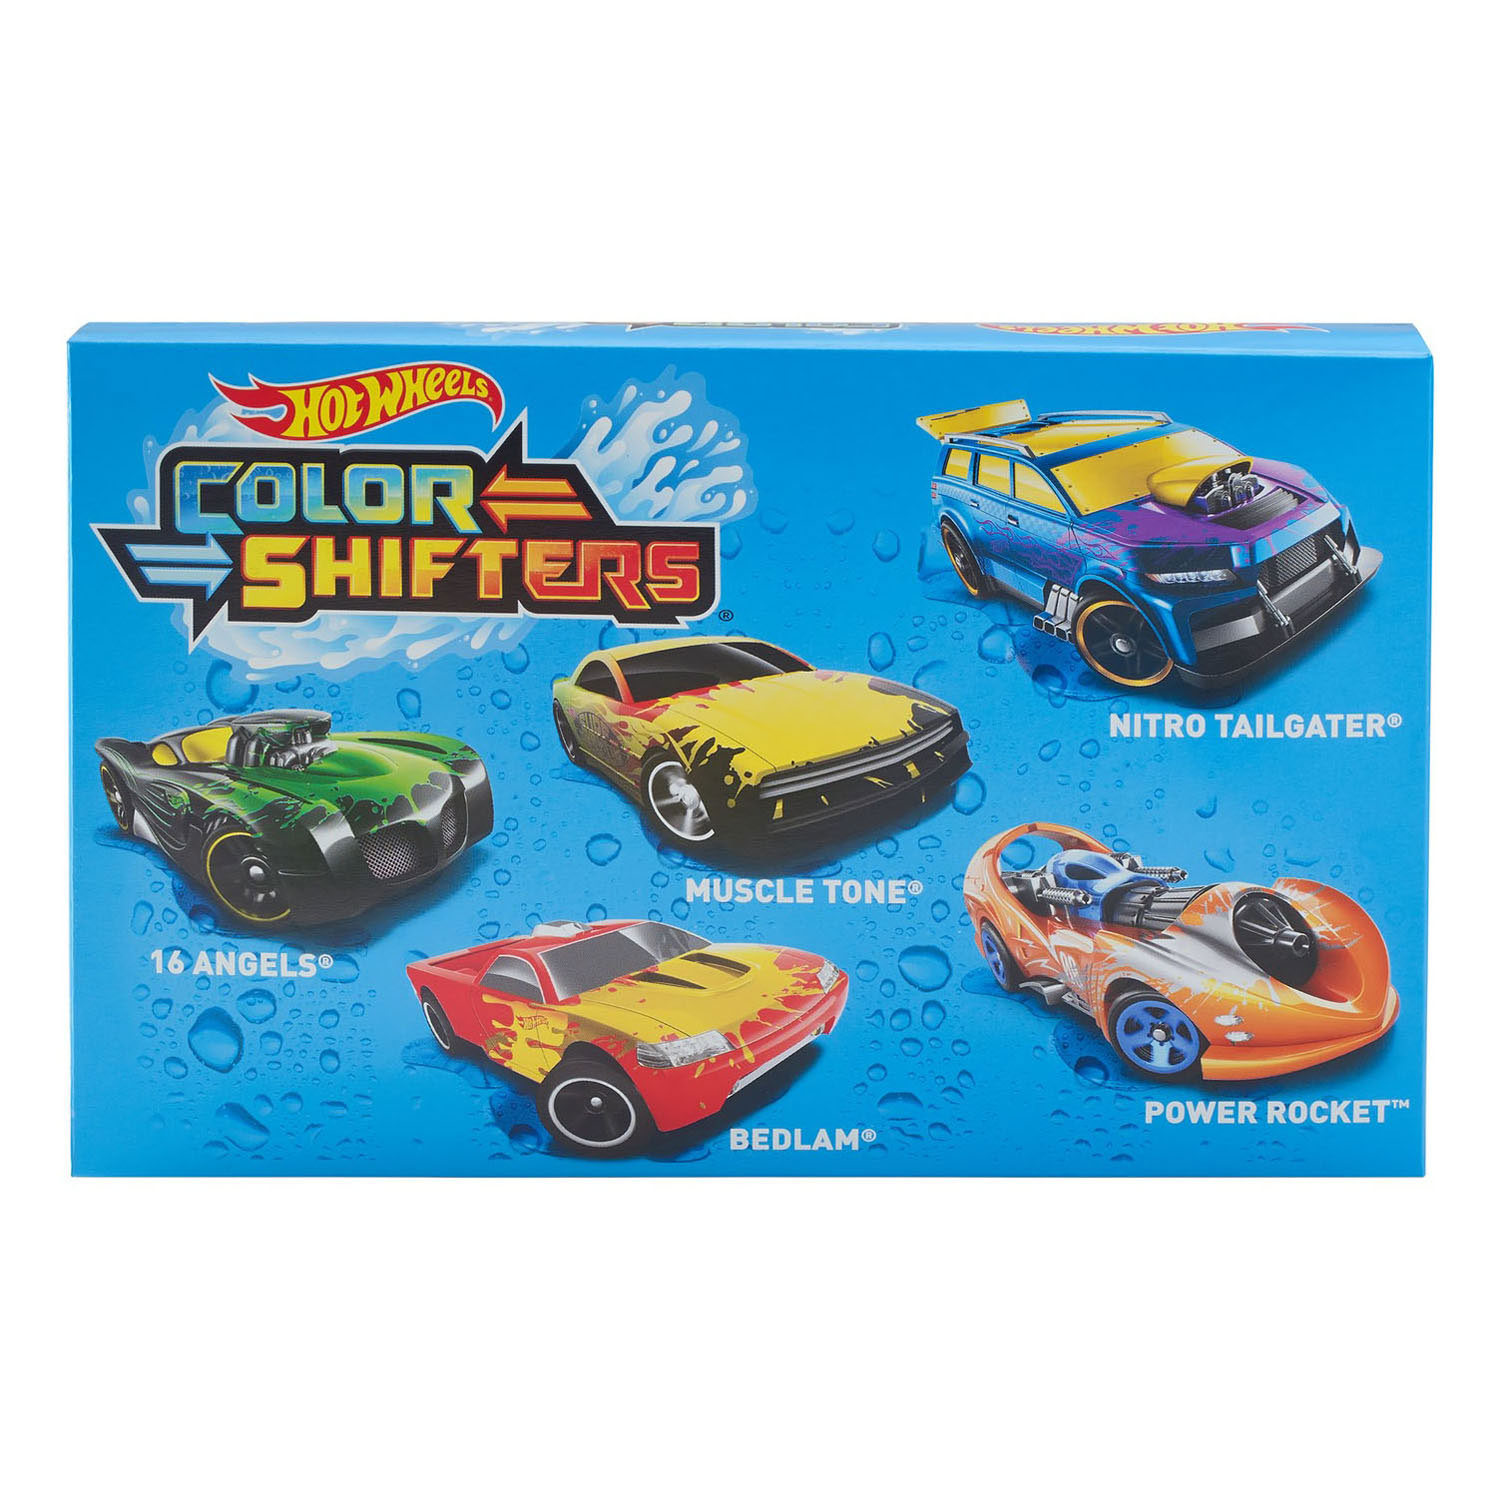 Verkoper gevolg tempo Hot Wheels Color Shifters, 5st. online kopen? | Lobbes Speelgoed